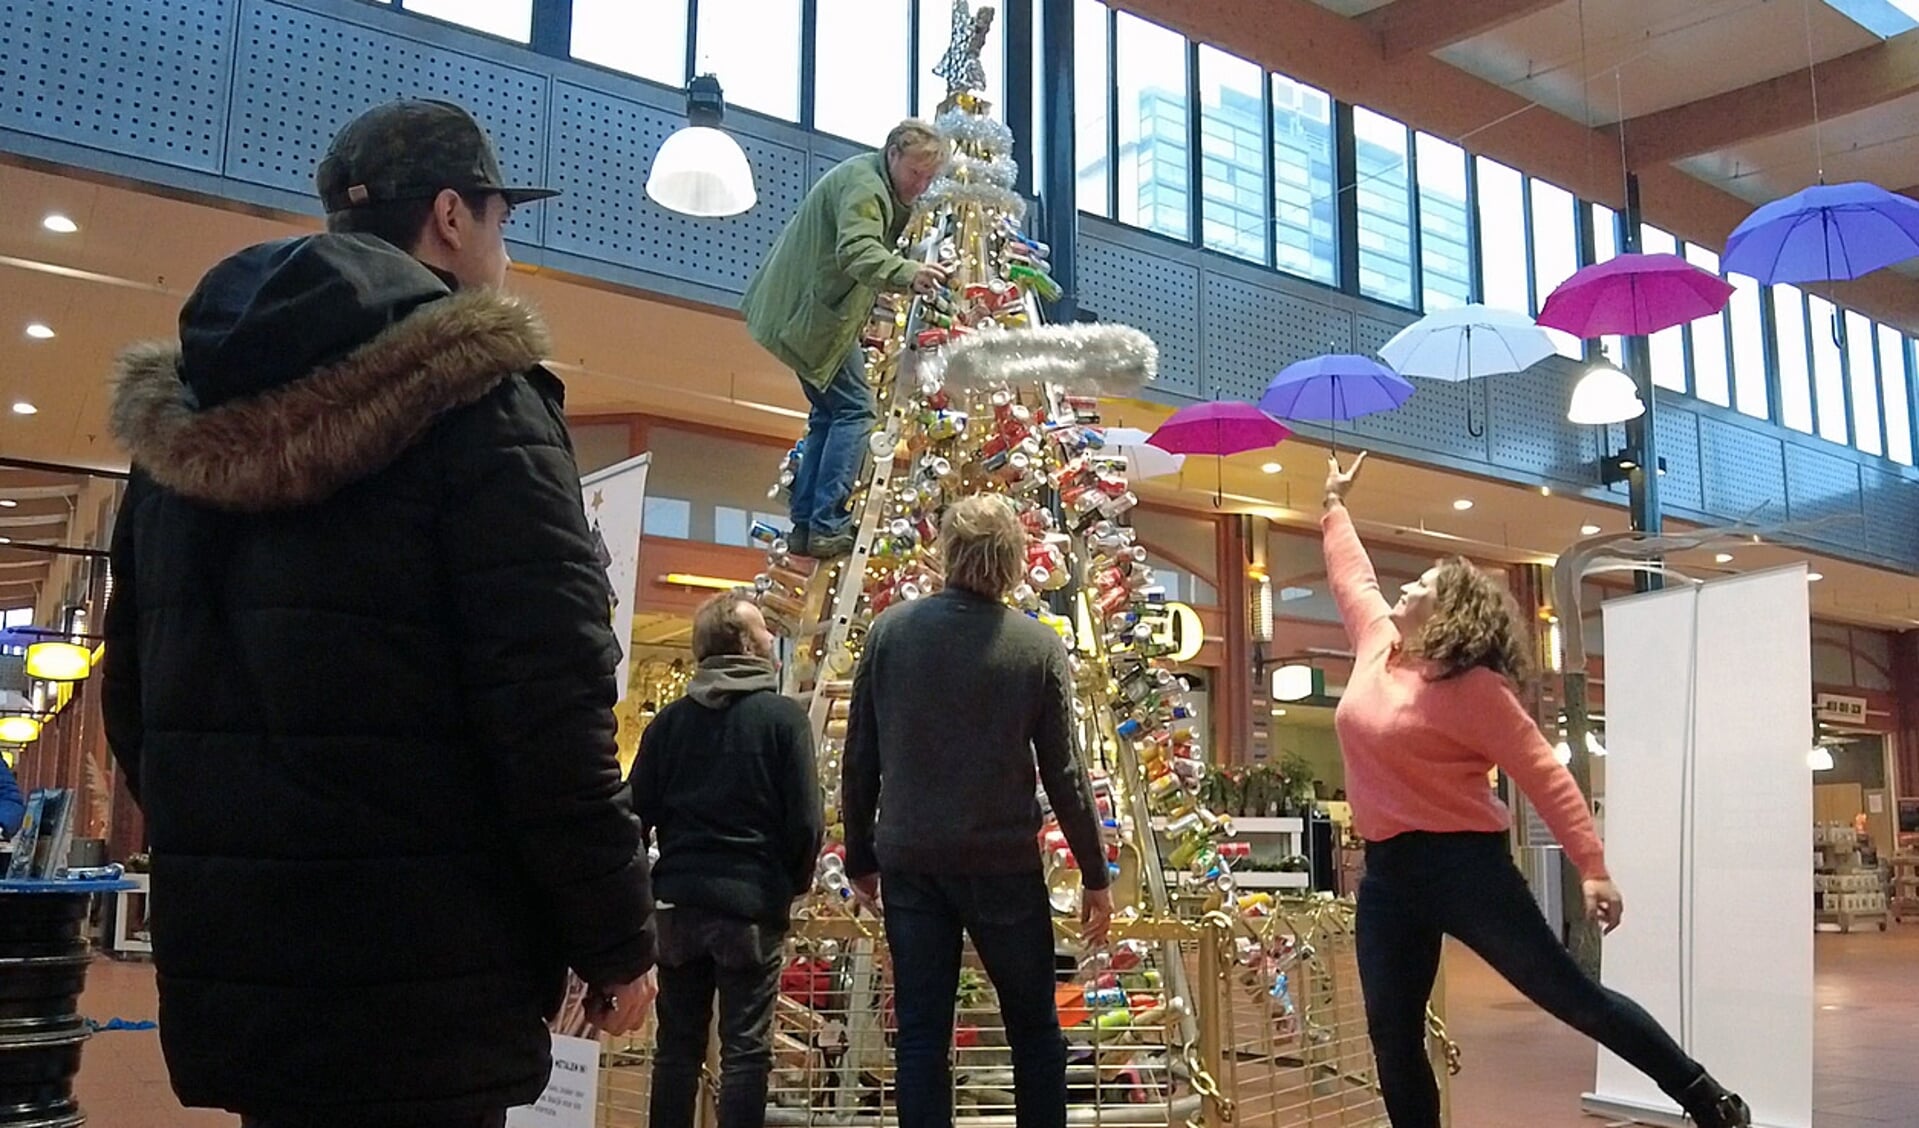 Kerstboom van gerecycled materiaal - de slingers worden toegeworpen